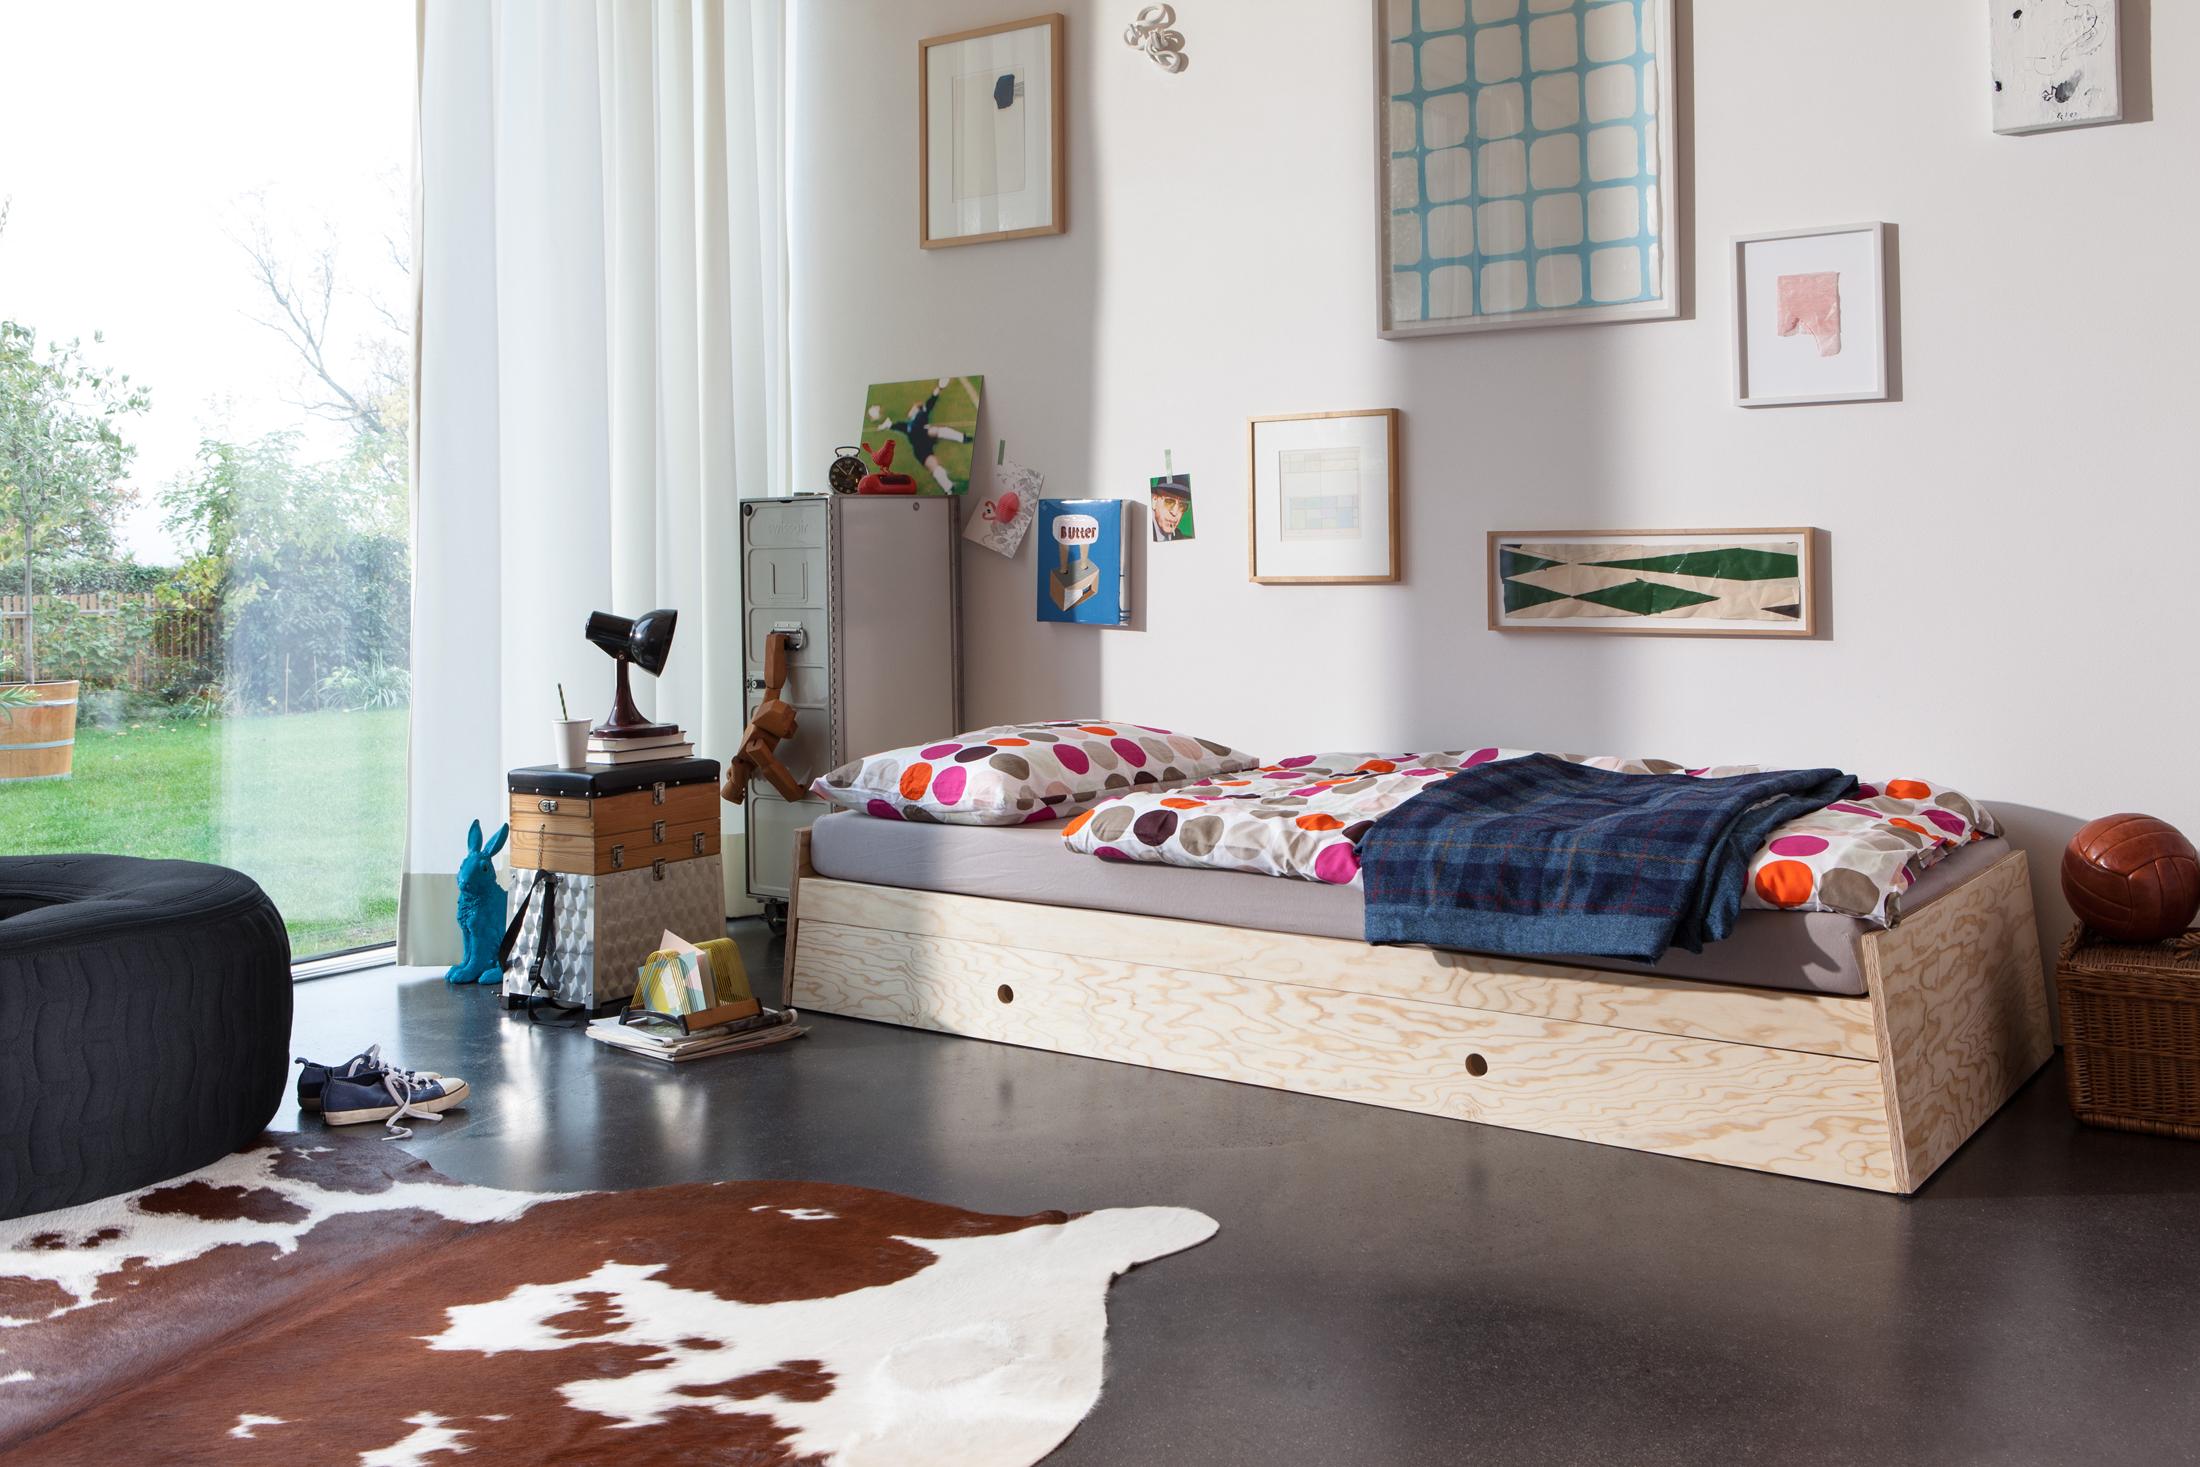 Jugendzimmer im eklektischen Stil #jugendzimmer #kuhfell #jugendbett ©Richard Lampert/Peter Schumacher, Designer: Alexander Seifried